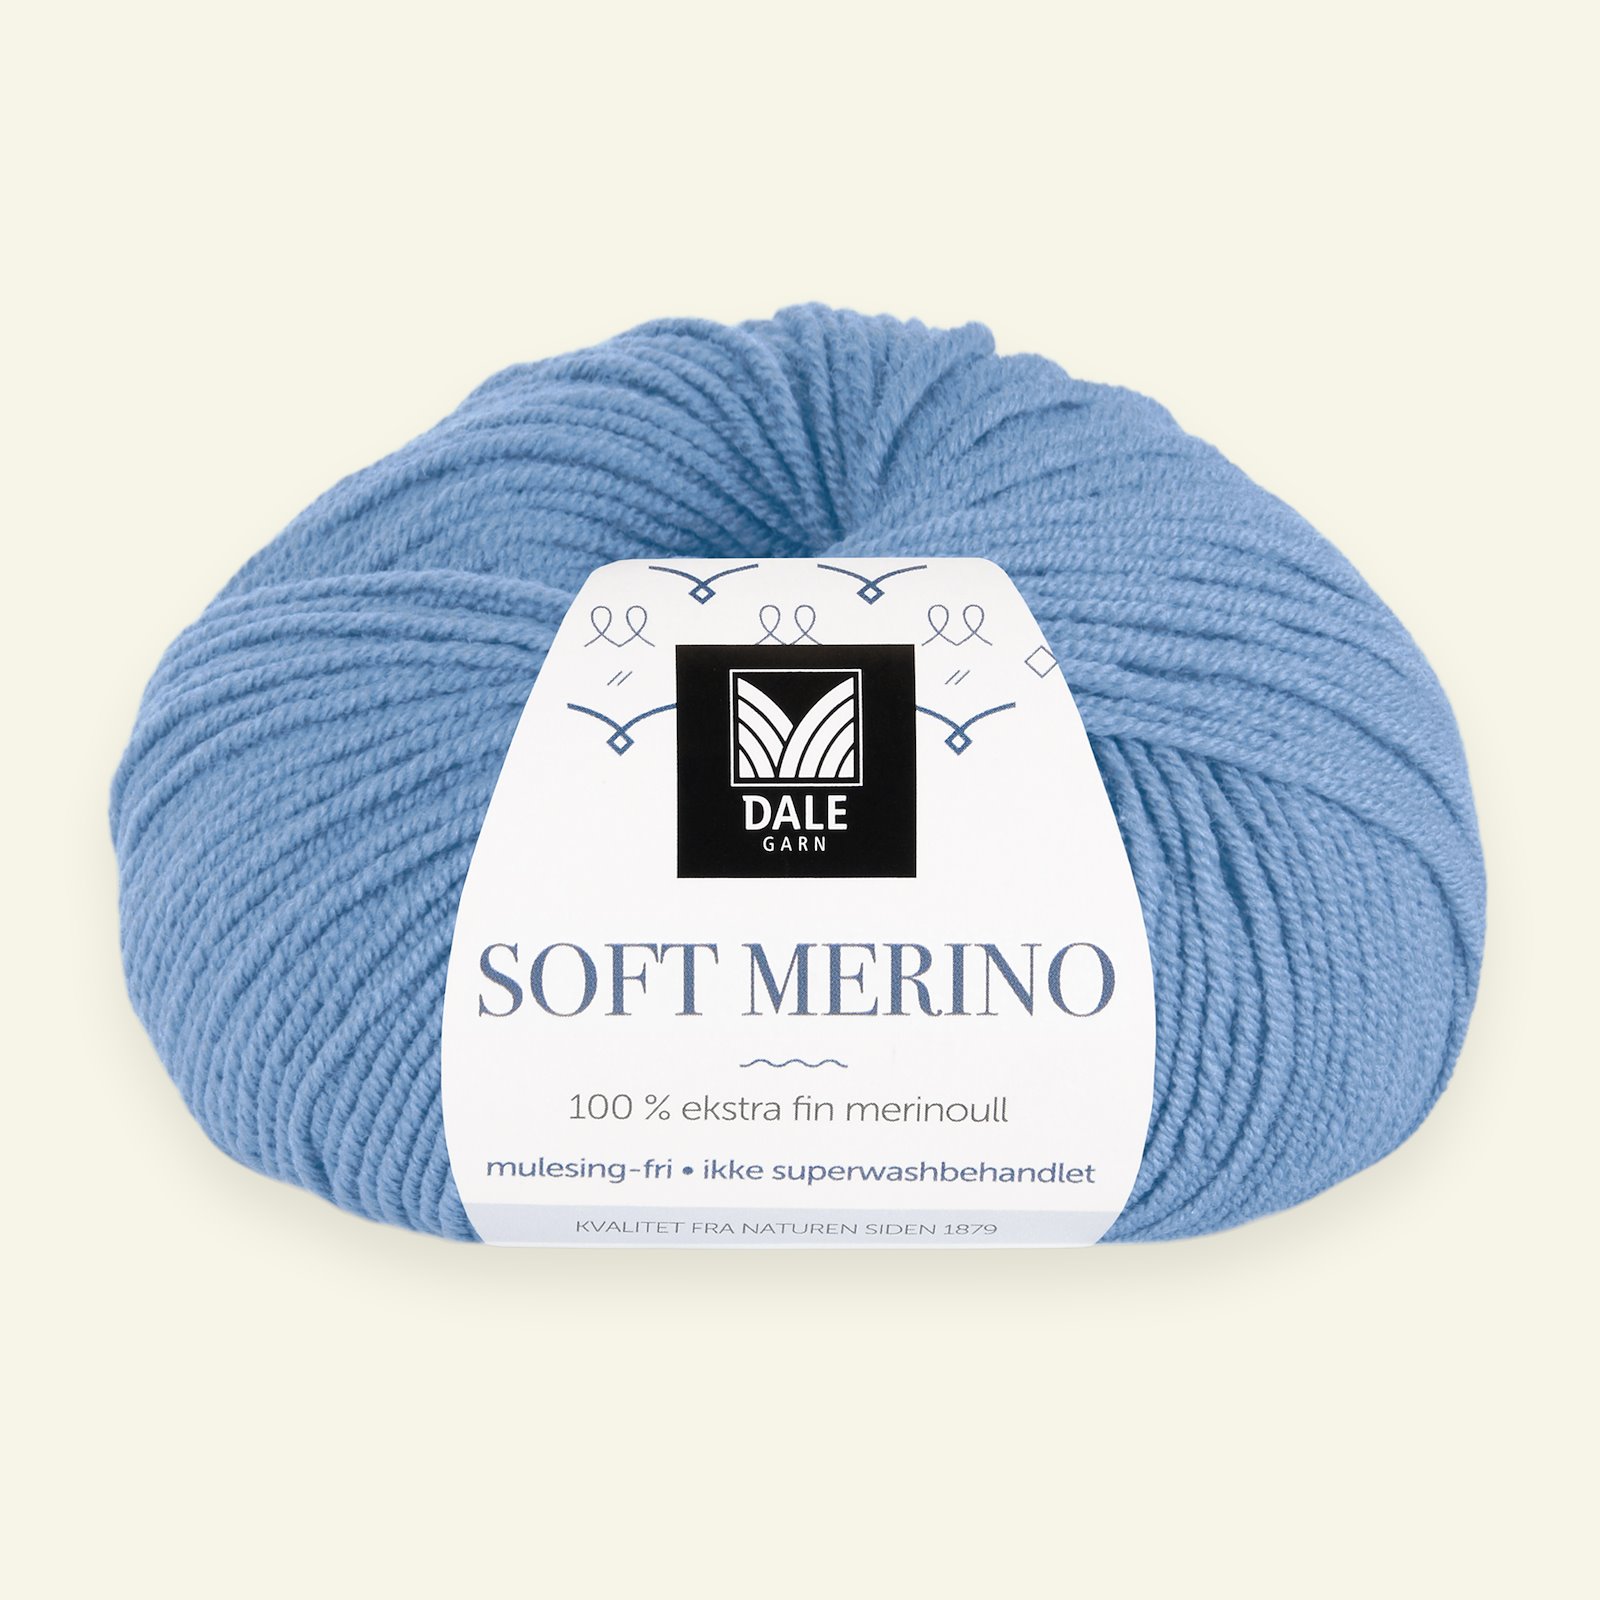 Dale Garn, 100% ekstra fint merinogarn "Soft Merino", Isblå (3027) 90000348_pack